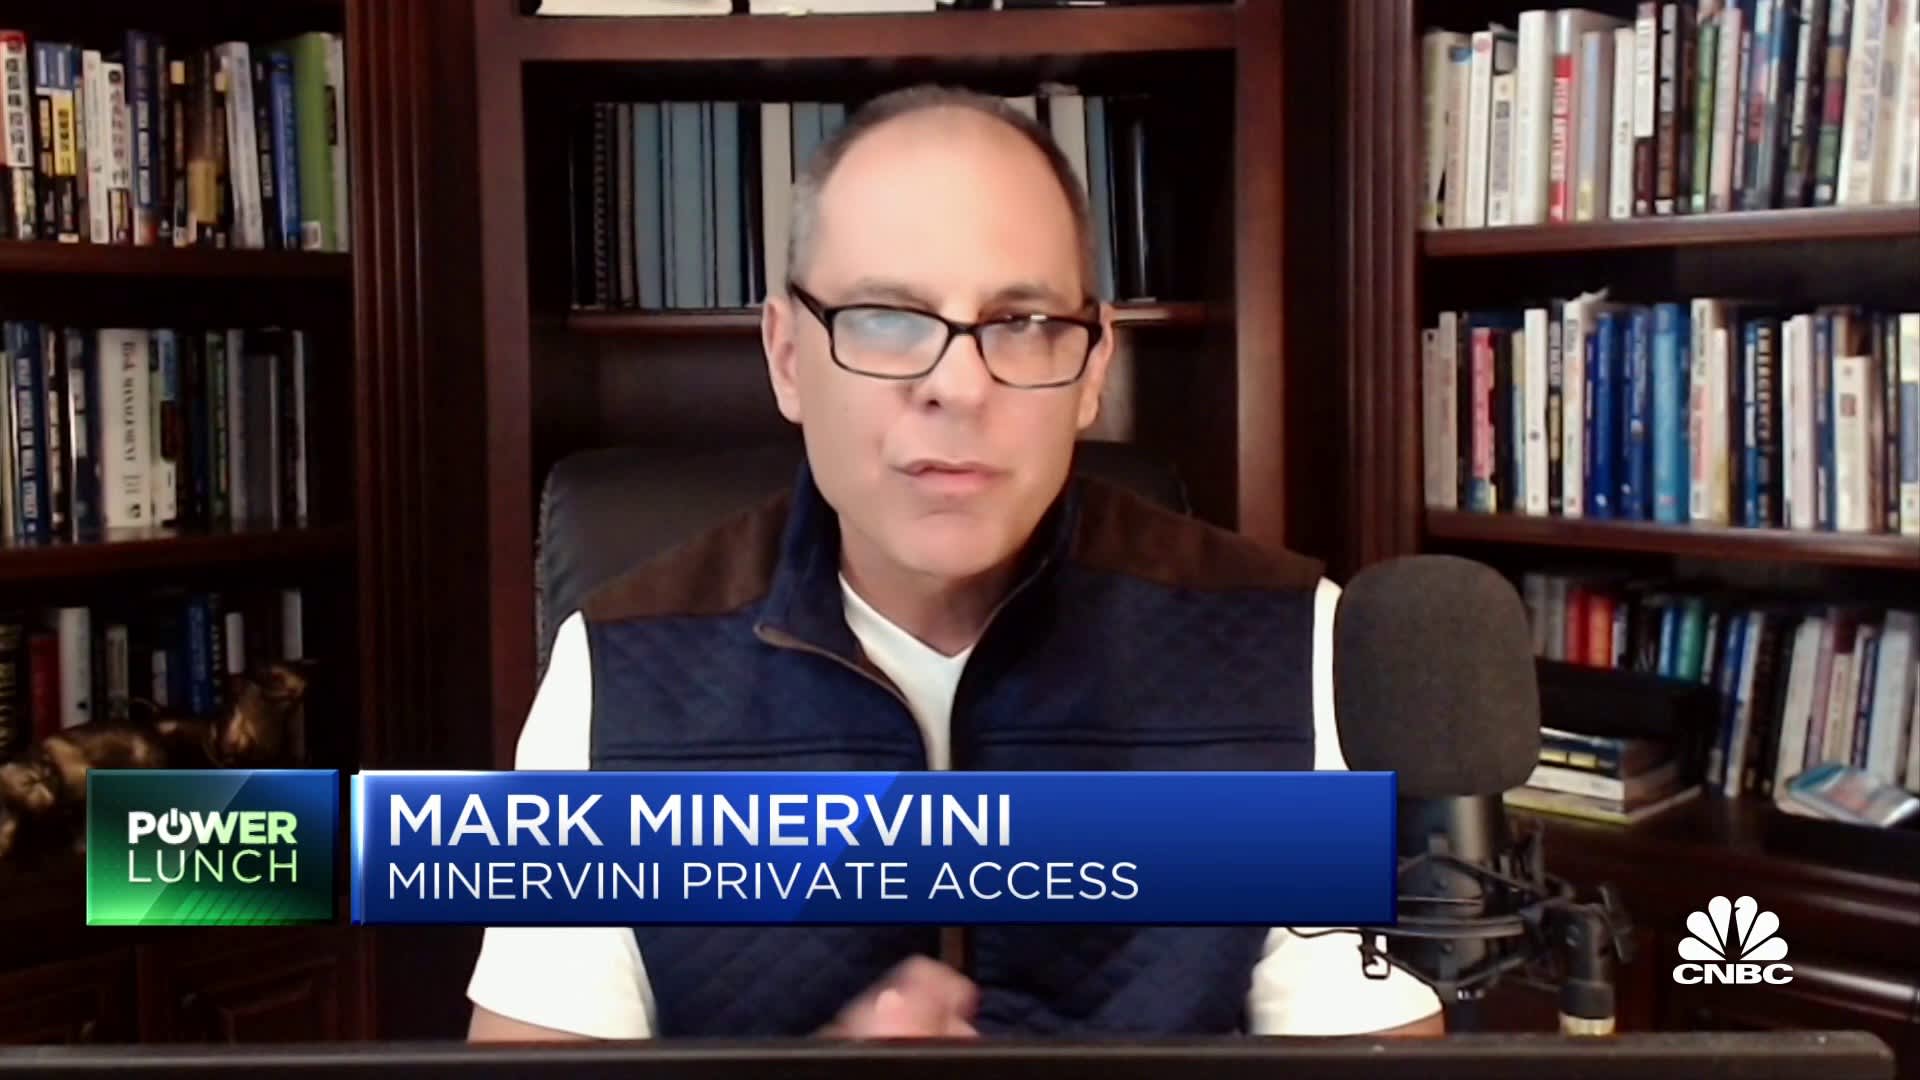 Mark Minervini hướng dẫn trader 10 bước để đạt được mục tiêu